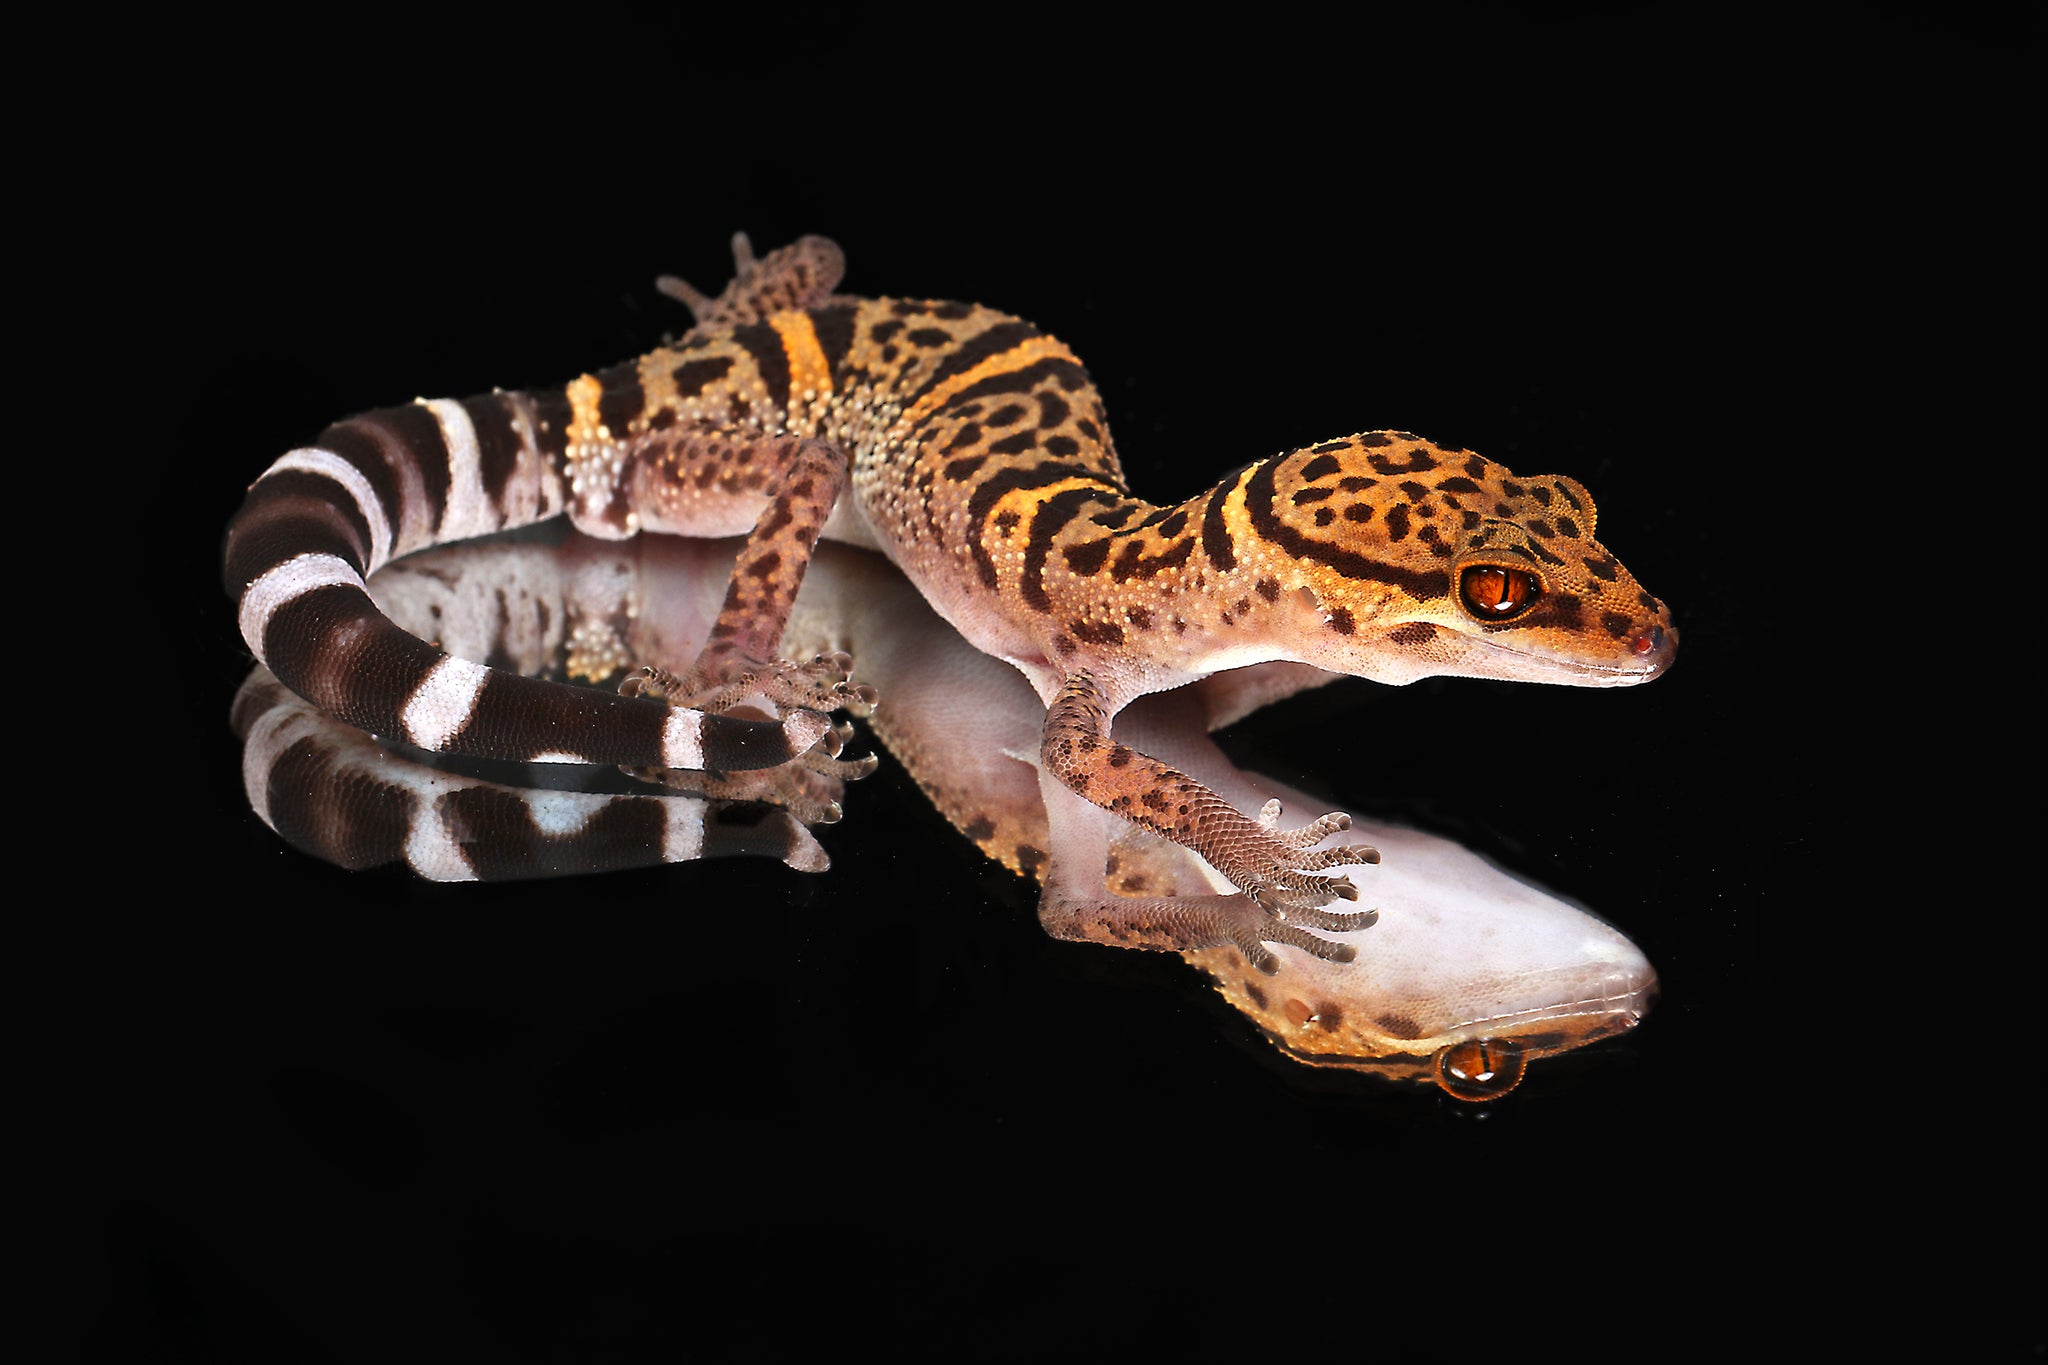 Chinese Cave Gecko (Goniurosaurus bawanglingensis)